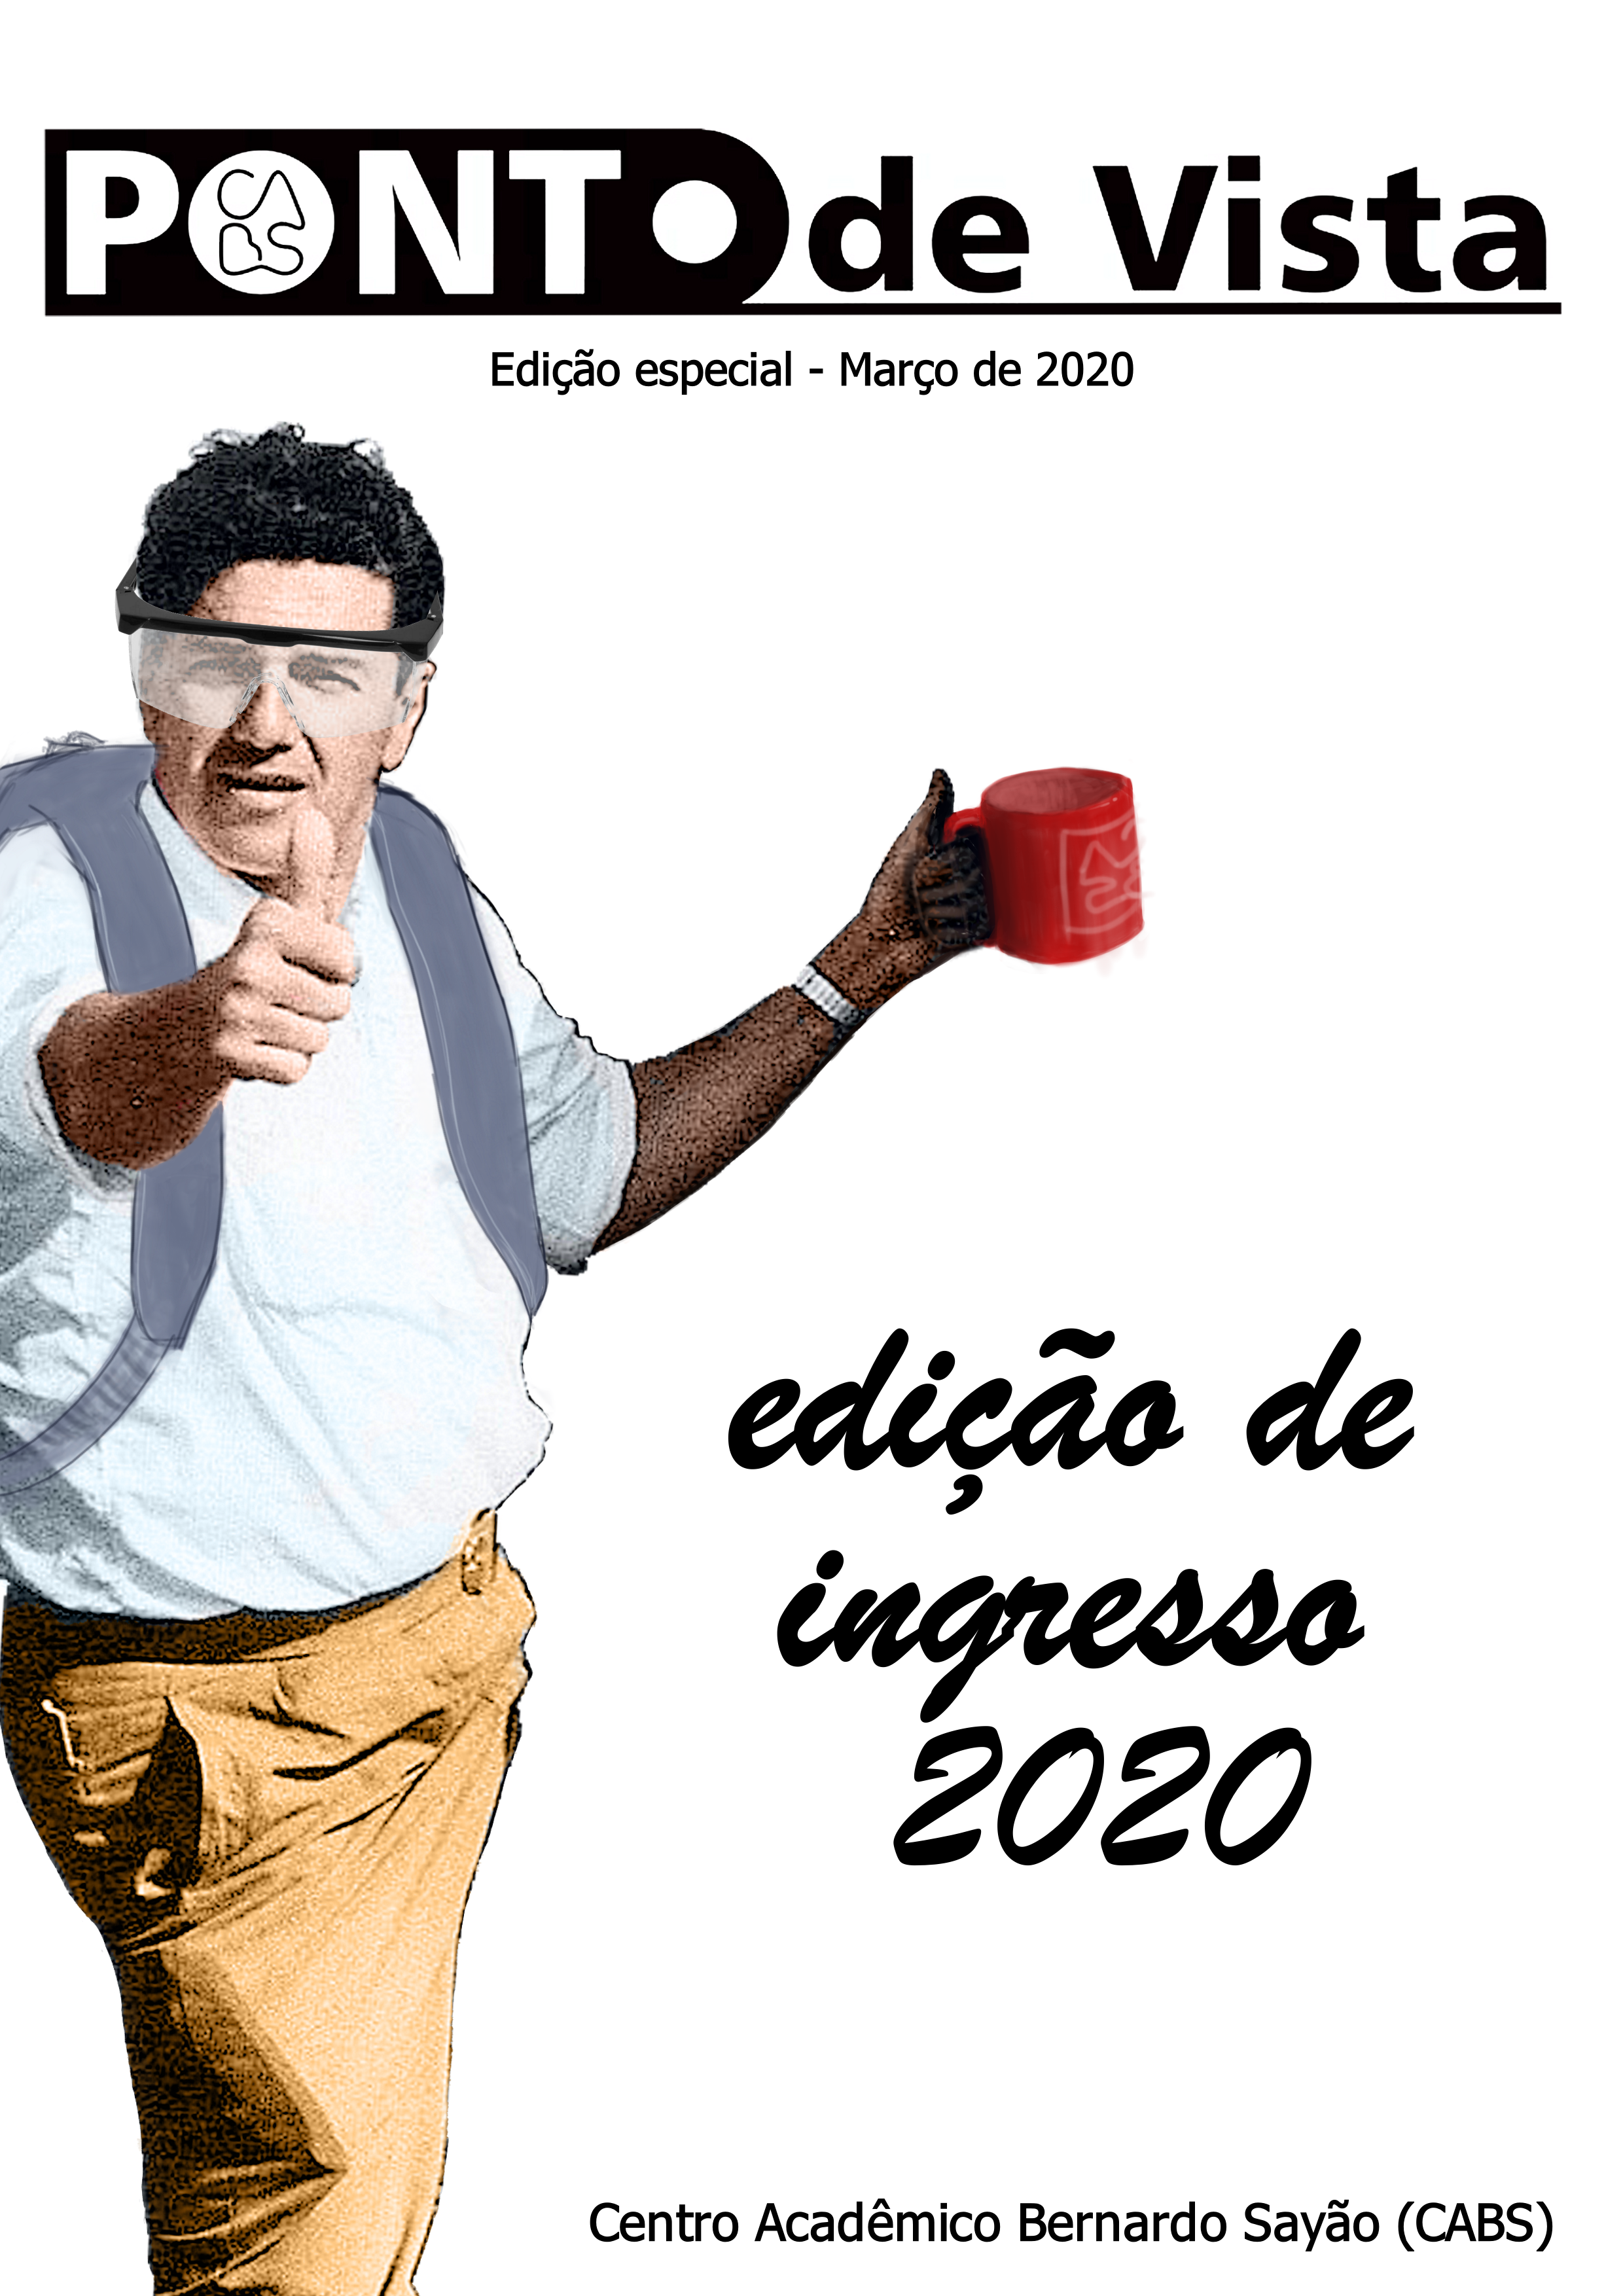 Imagem da Capa do PV - Ingresso 2020